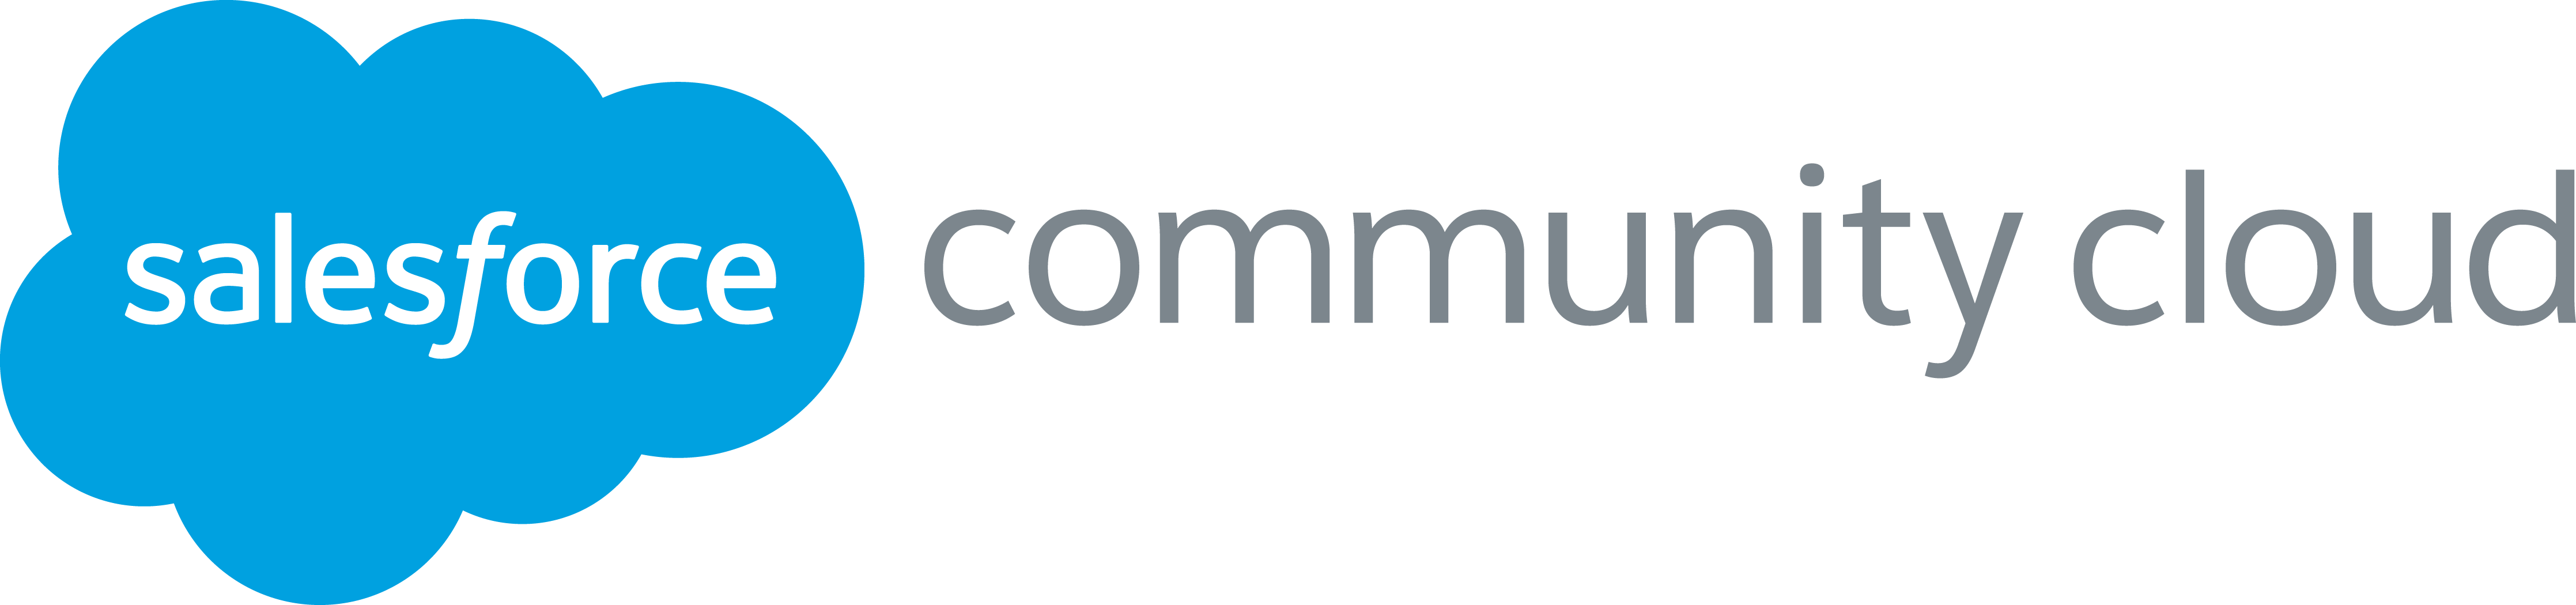 Salesforce_CommunityCloud